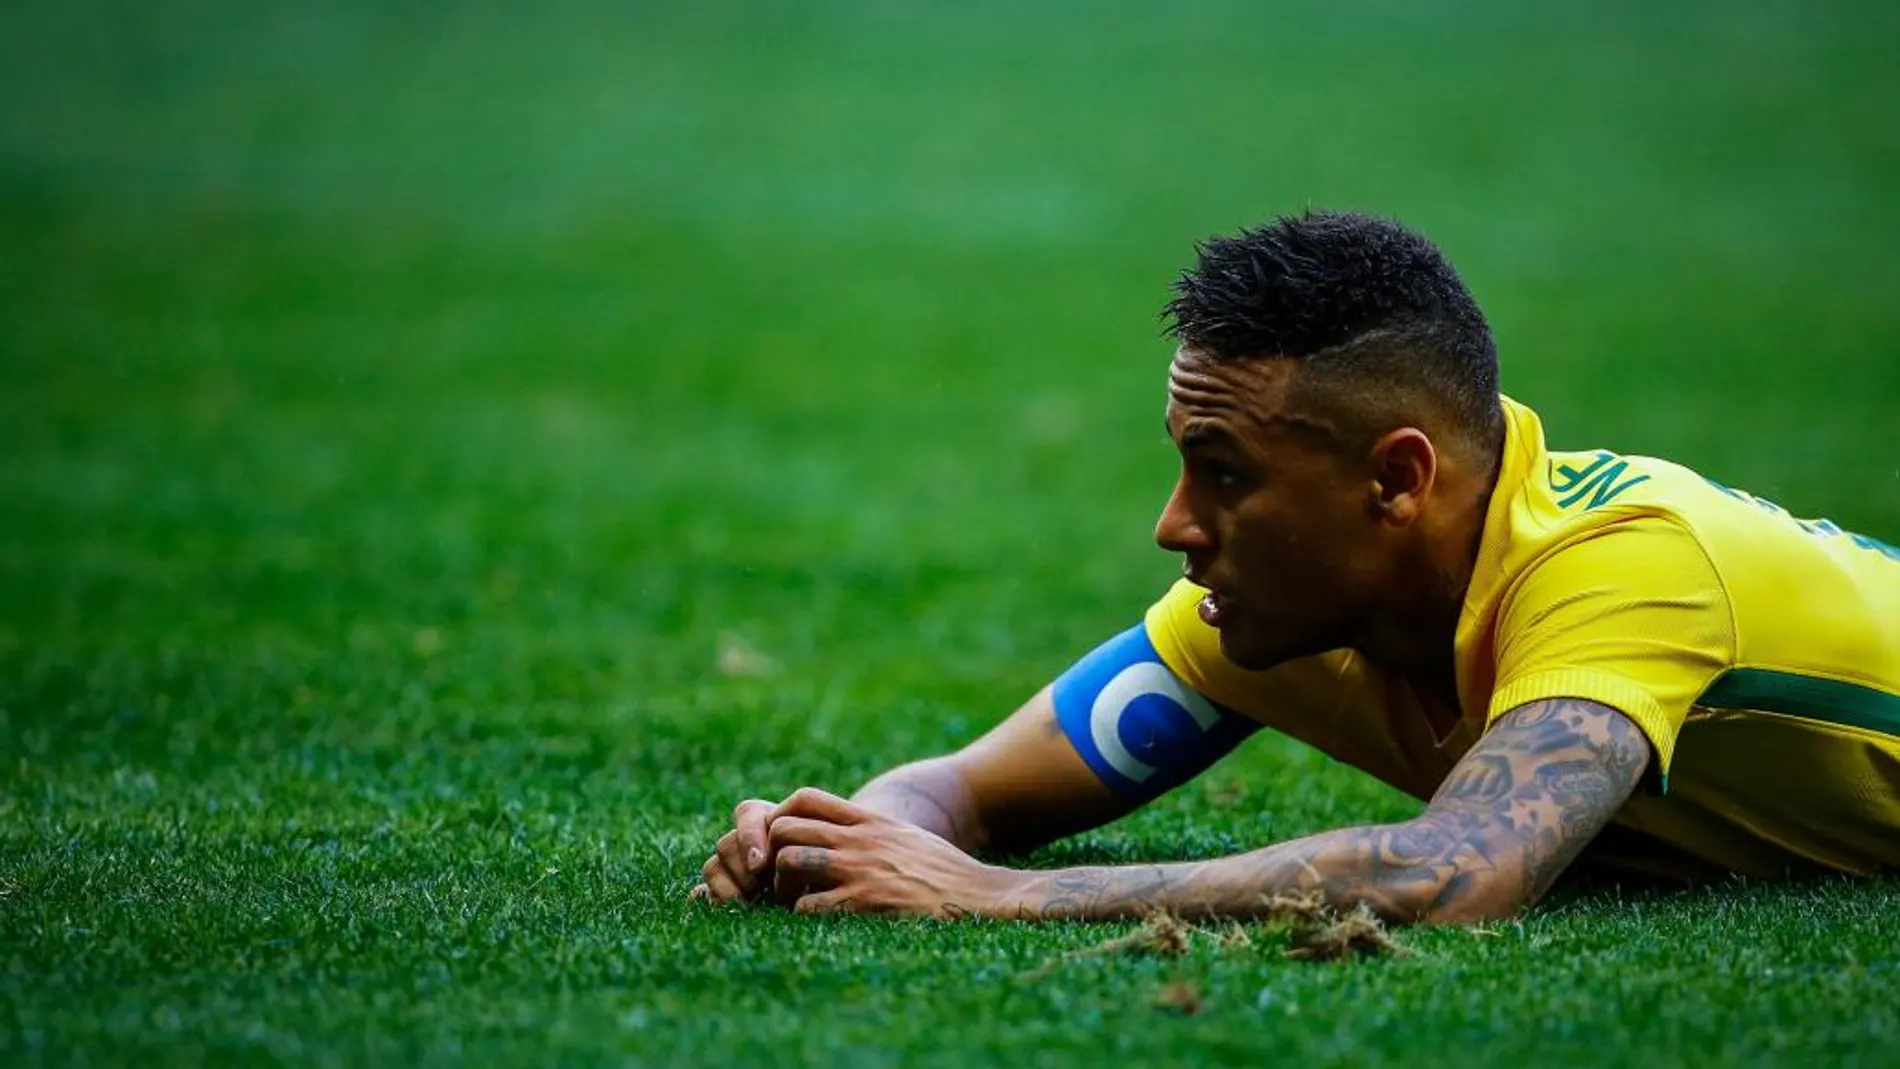 El jugador Neymar de Brasil durante el partido entre Brasil y Sudáfrica de los Juegos Olímpicos Río 2016